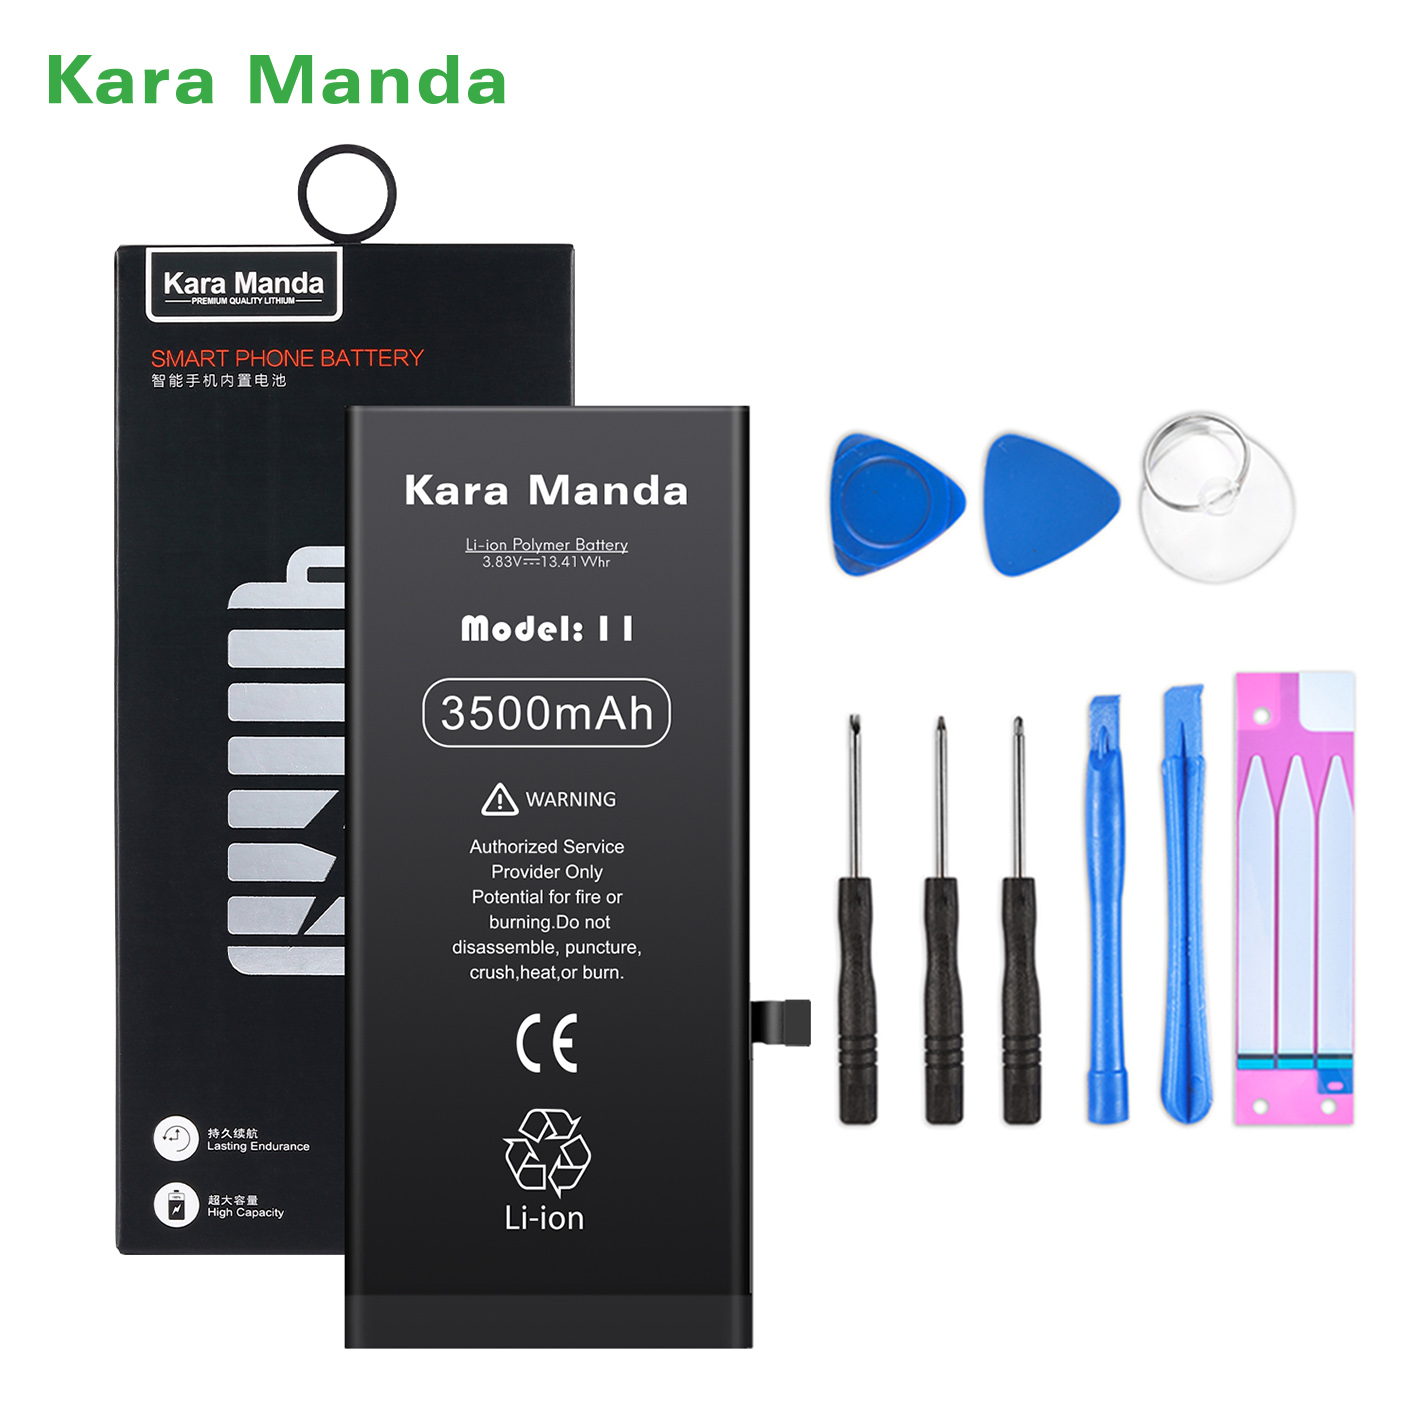 https://www.cnkaramanda.com/iphone-11-replacement-battery-high-capacity-3500mah-wholesale-oemkara-manda-product/